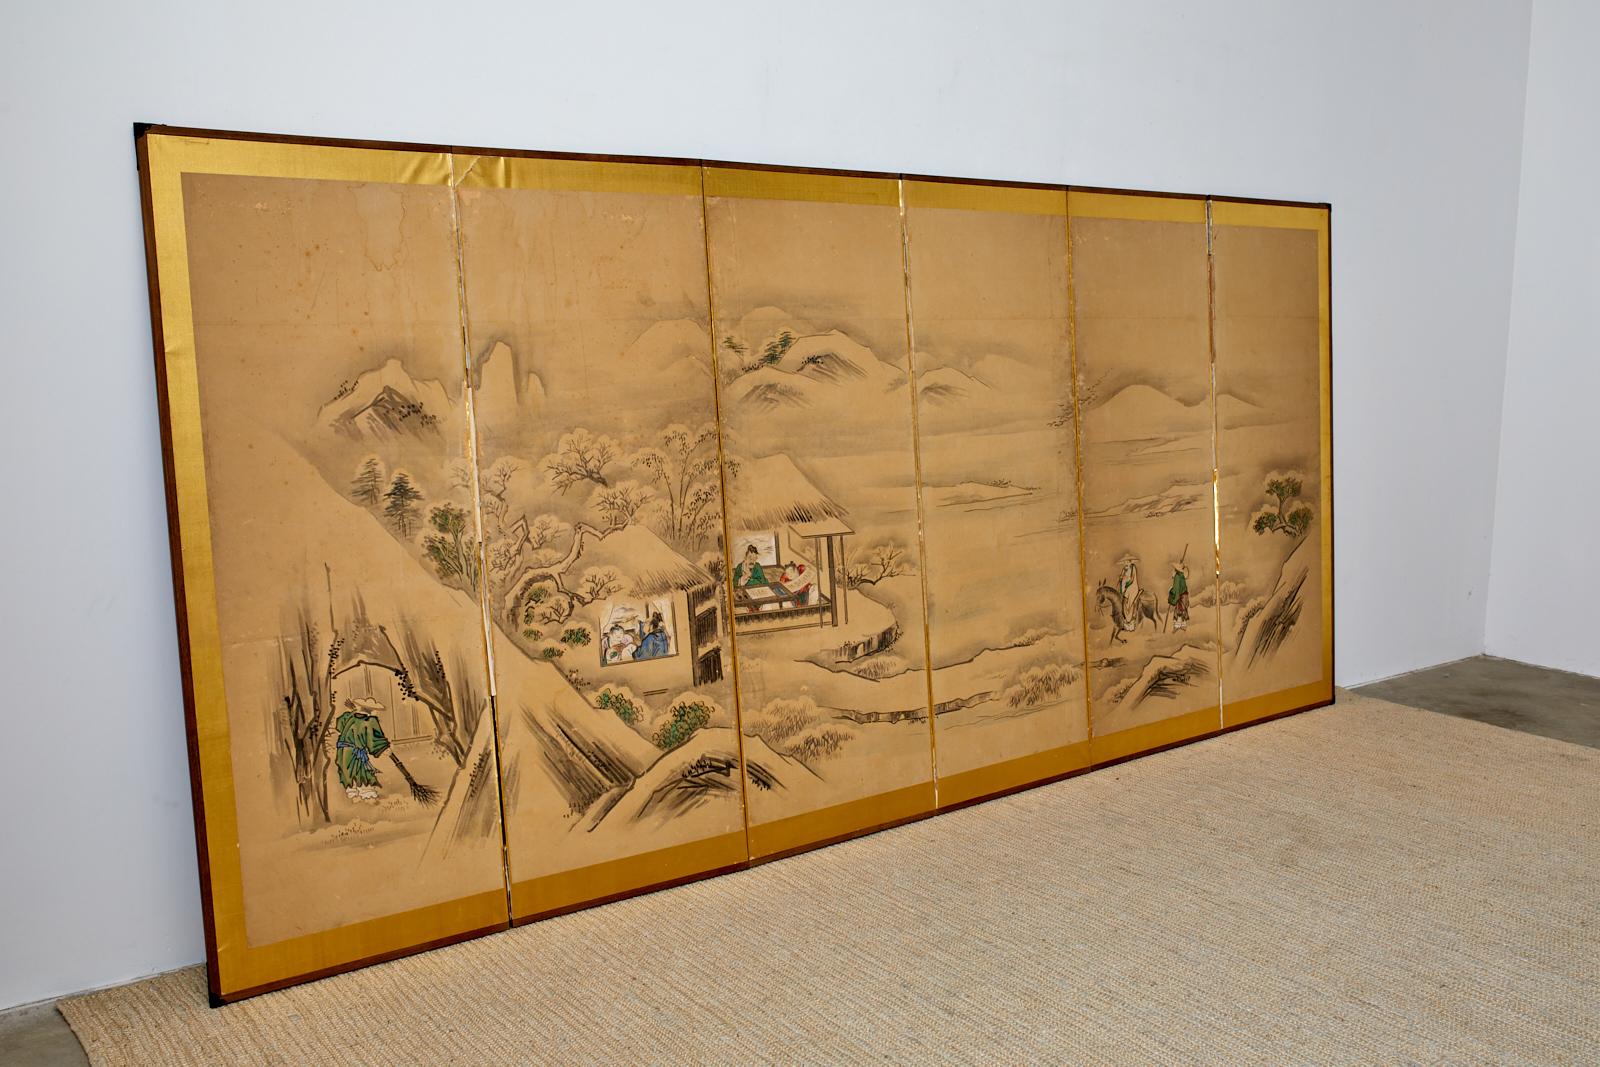 Großer japanischer Sechspaneel-Bildschirm aus der Meiji-Zeit, der eine Winterlandschaft mit einem chinesischen Weisen darstellt, der Freunde in einer Landvilla besucht. Tusche und lebhafte Farbpigmente auf Maulbeerpapier auf einem vergoldeten